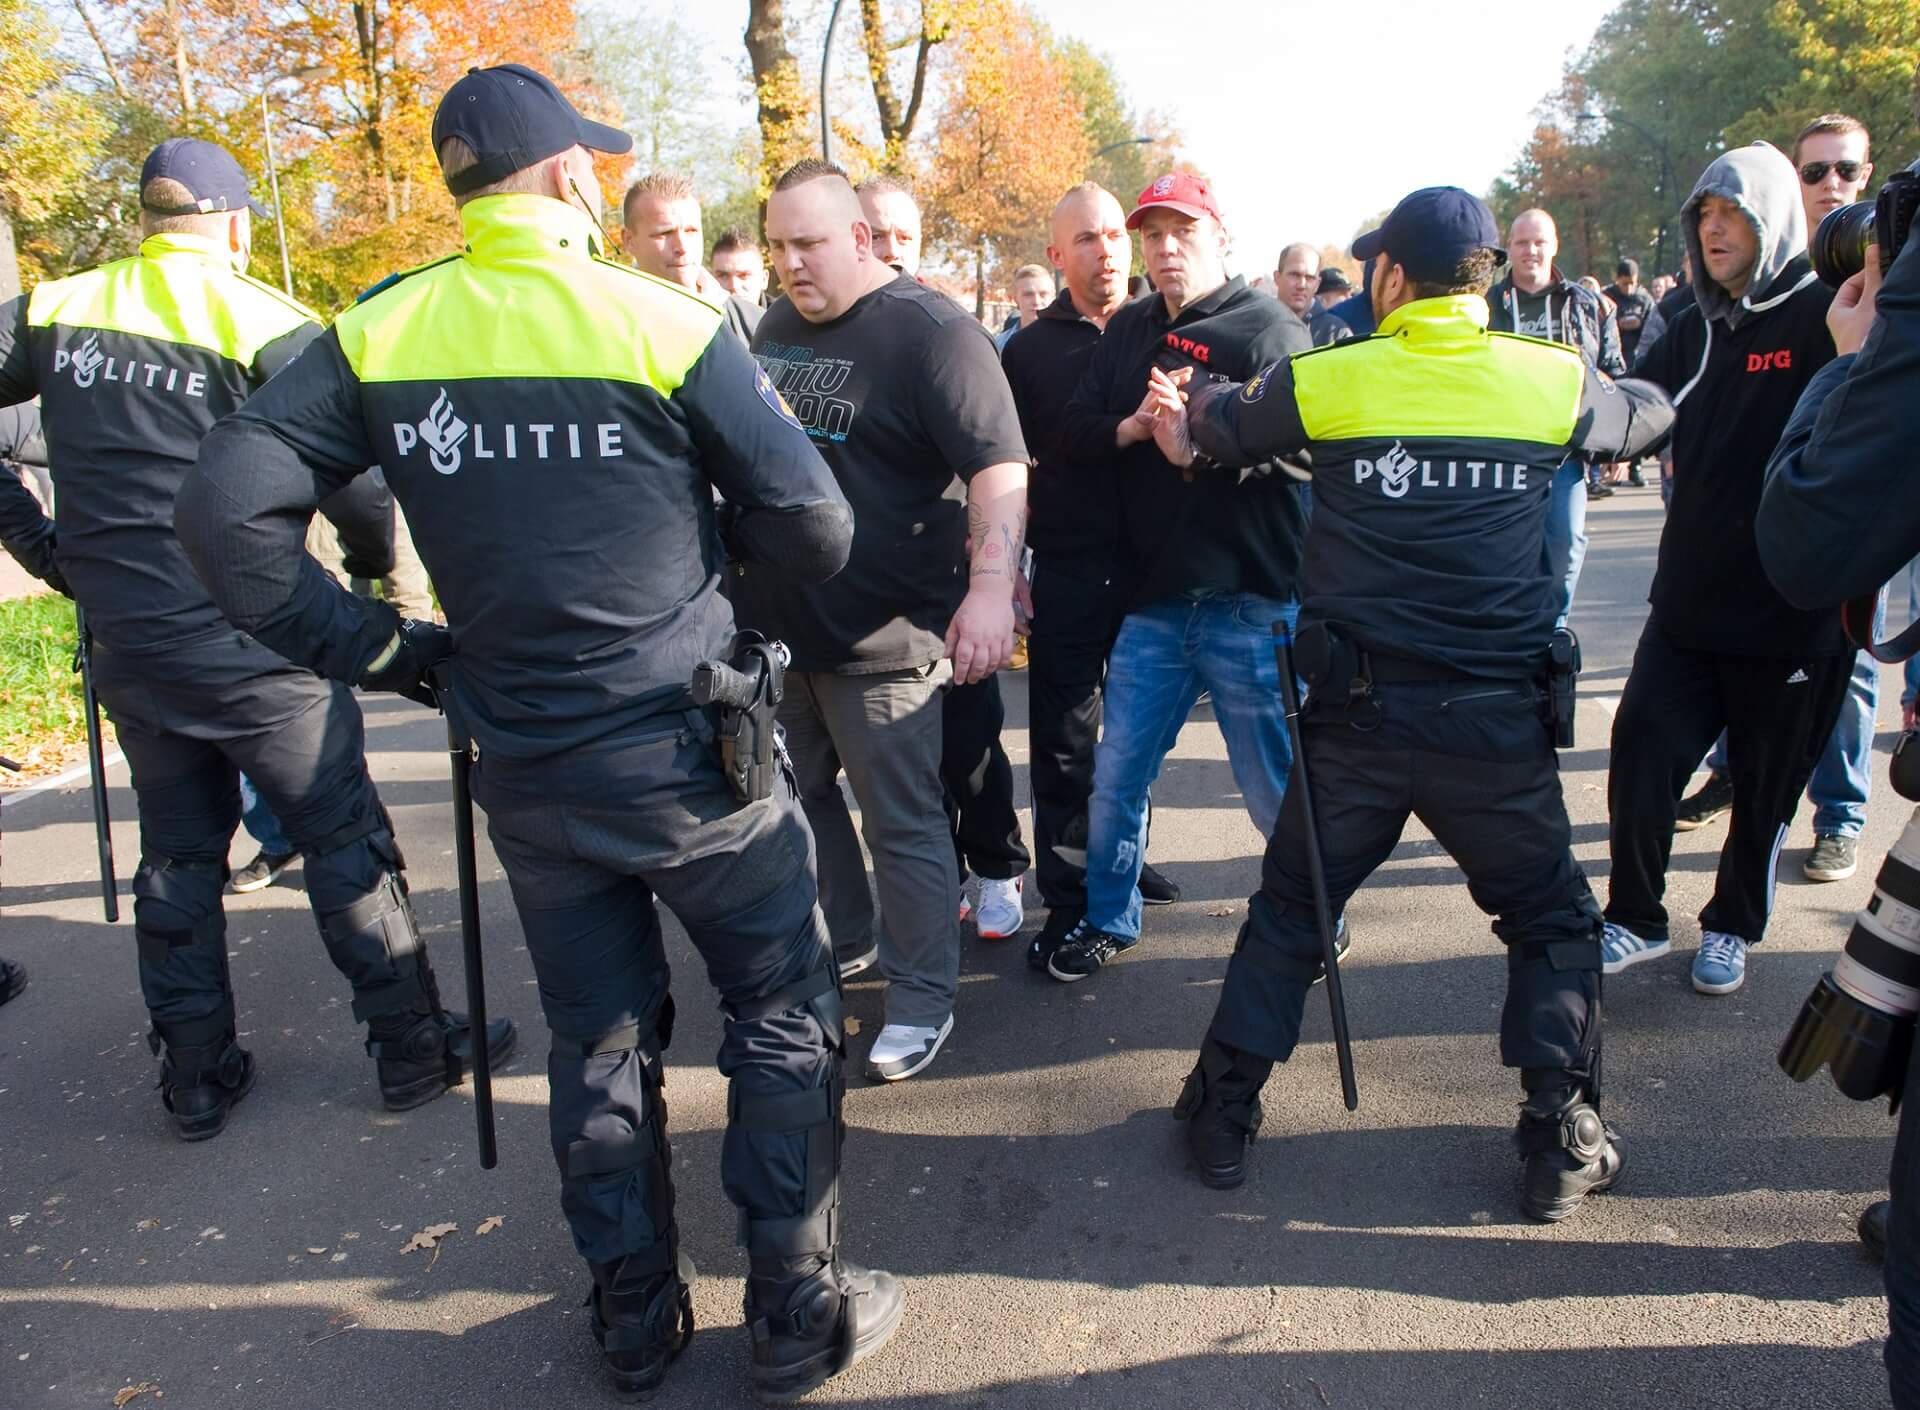 MASOWE PROTESTY PRZECIW BLOKADOM W CAŁEJ HOLANDII